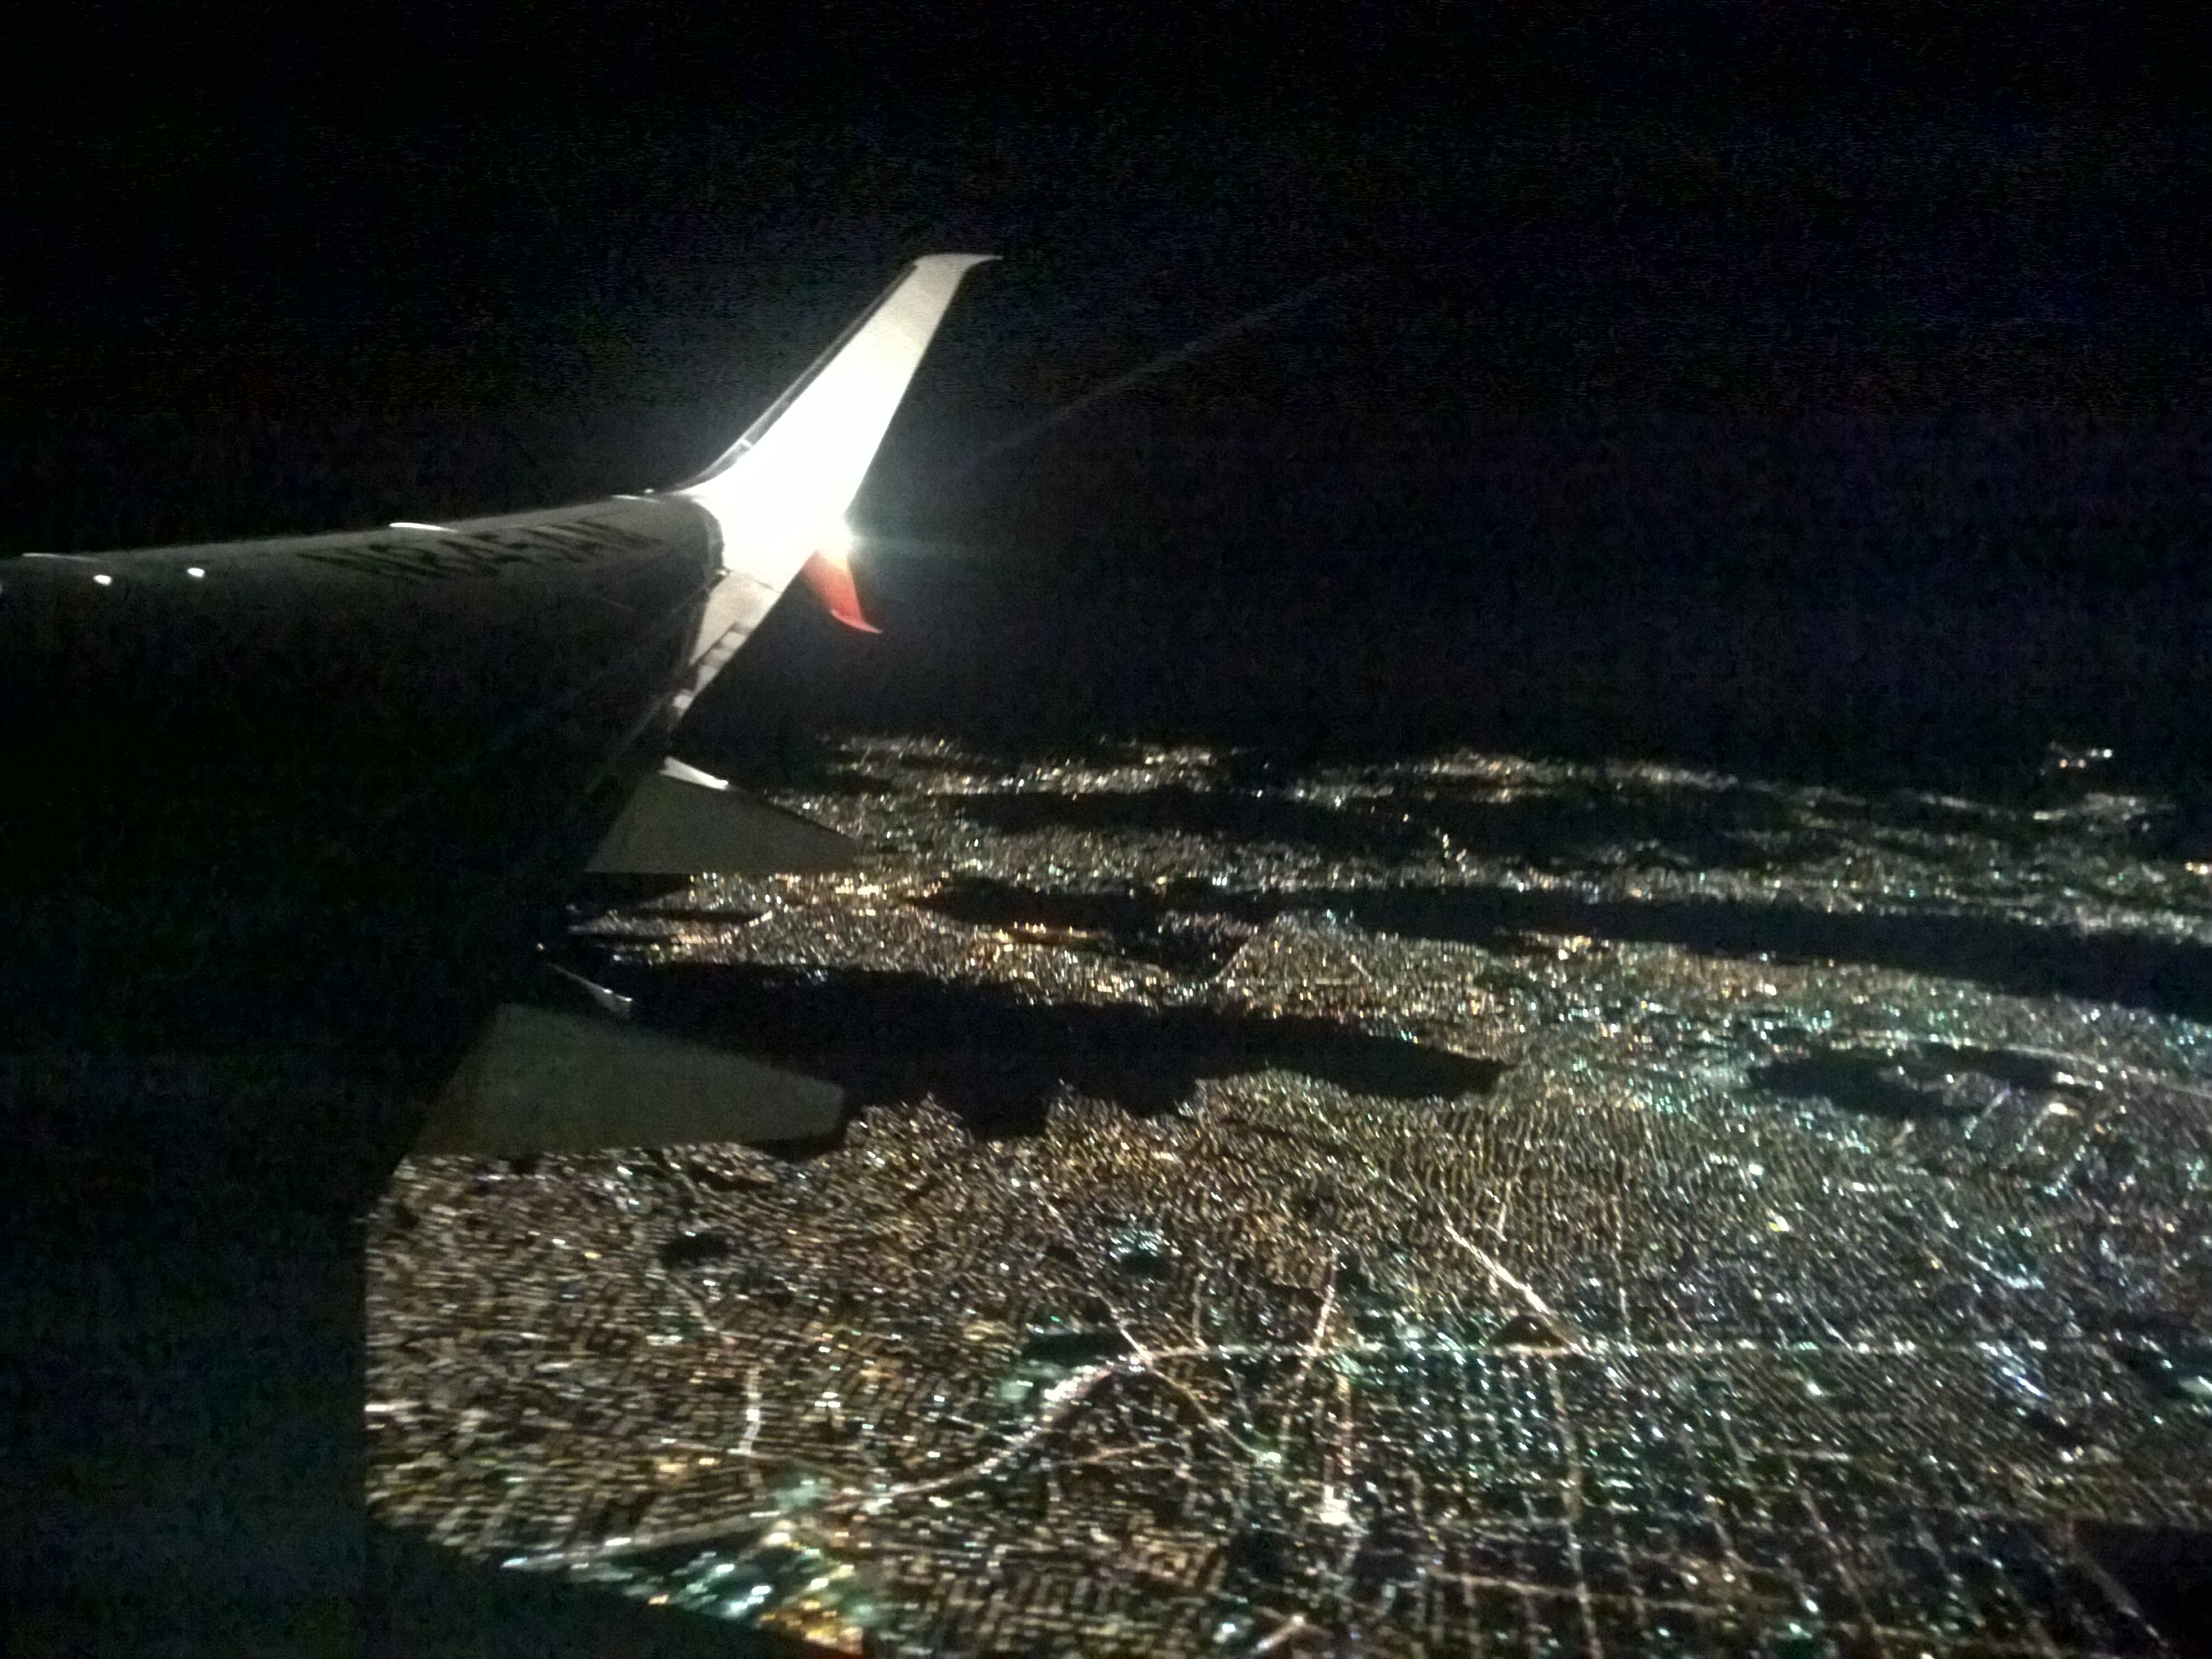 Città del Messico di notte come una distesa di diamanti luccicanti